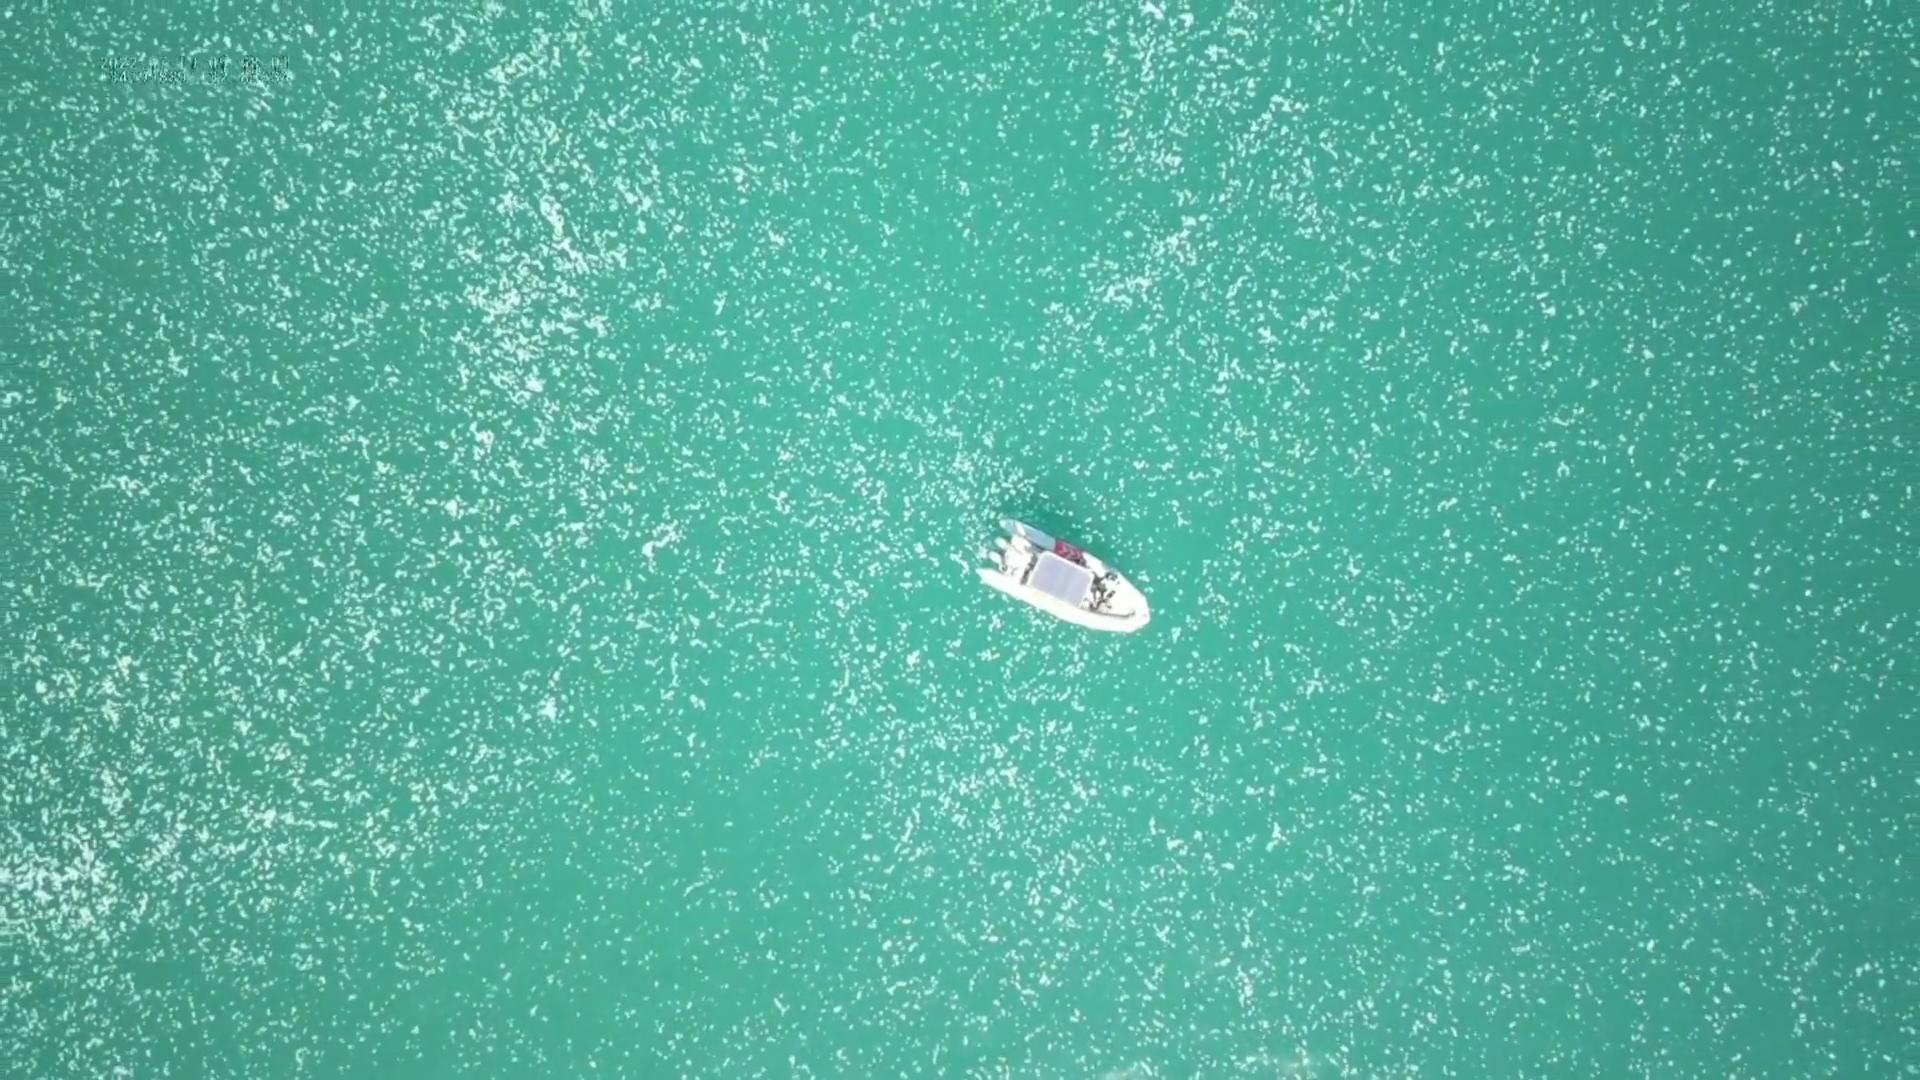 Riesiger Quallen-Schwarm terrorisiert Schwimmer Drohne zeigt Invasion in Israel